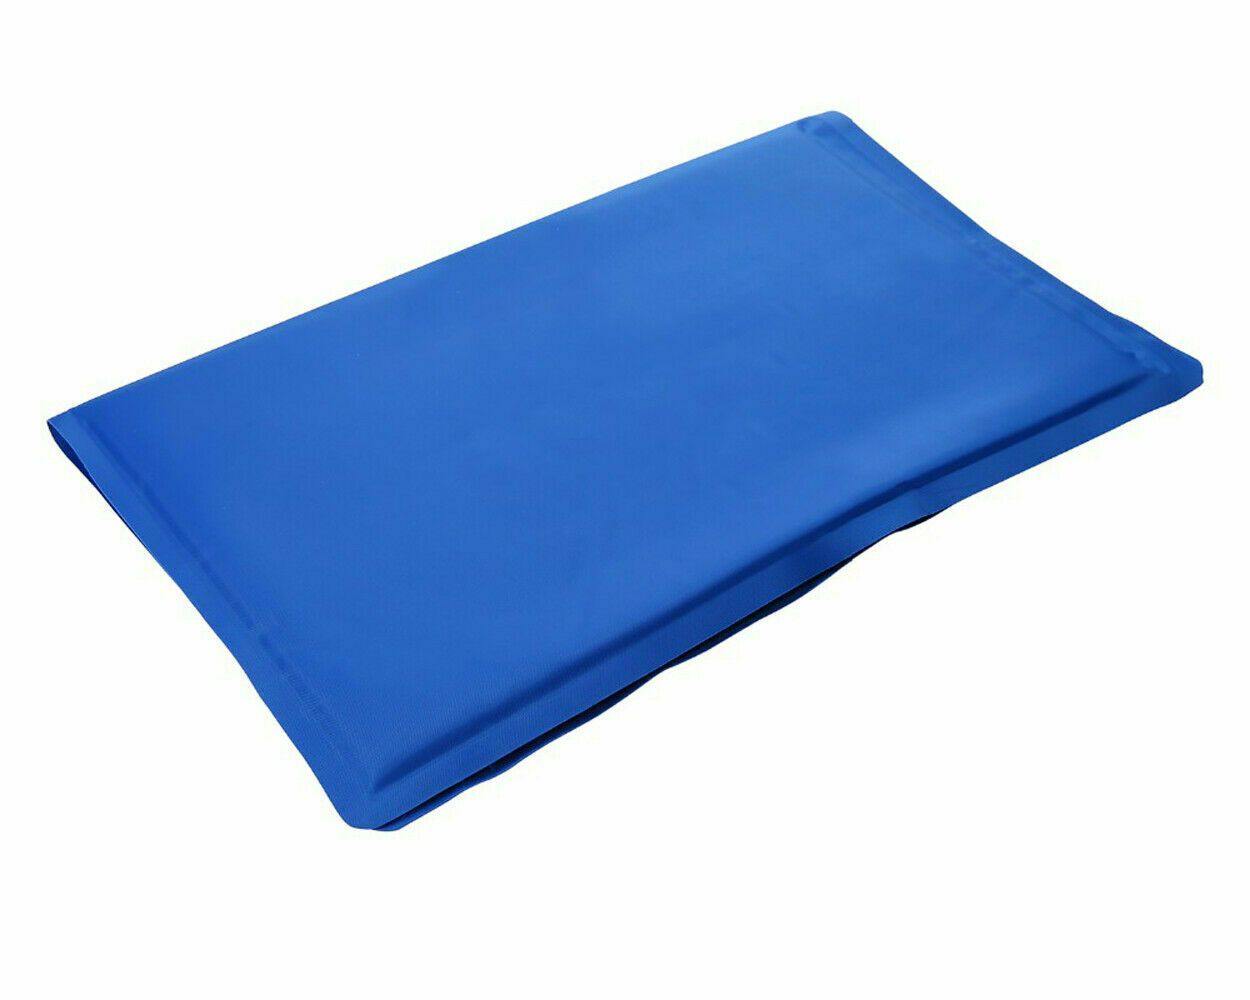 Cooling Gel Sleeping Aid Pad Mat Sofa Pillow Insert Heat Absorb Pet Bed Summer Sparesbarn